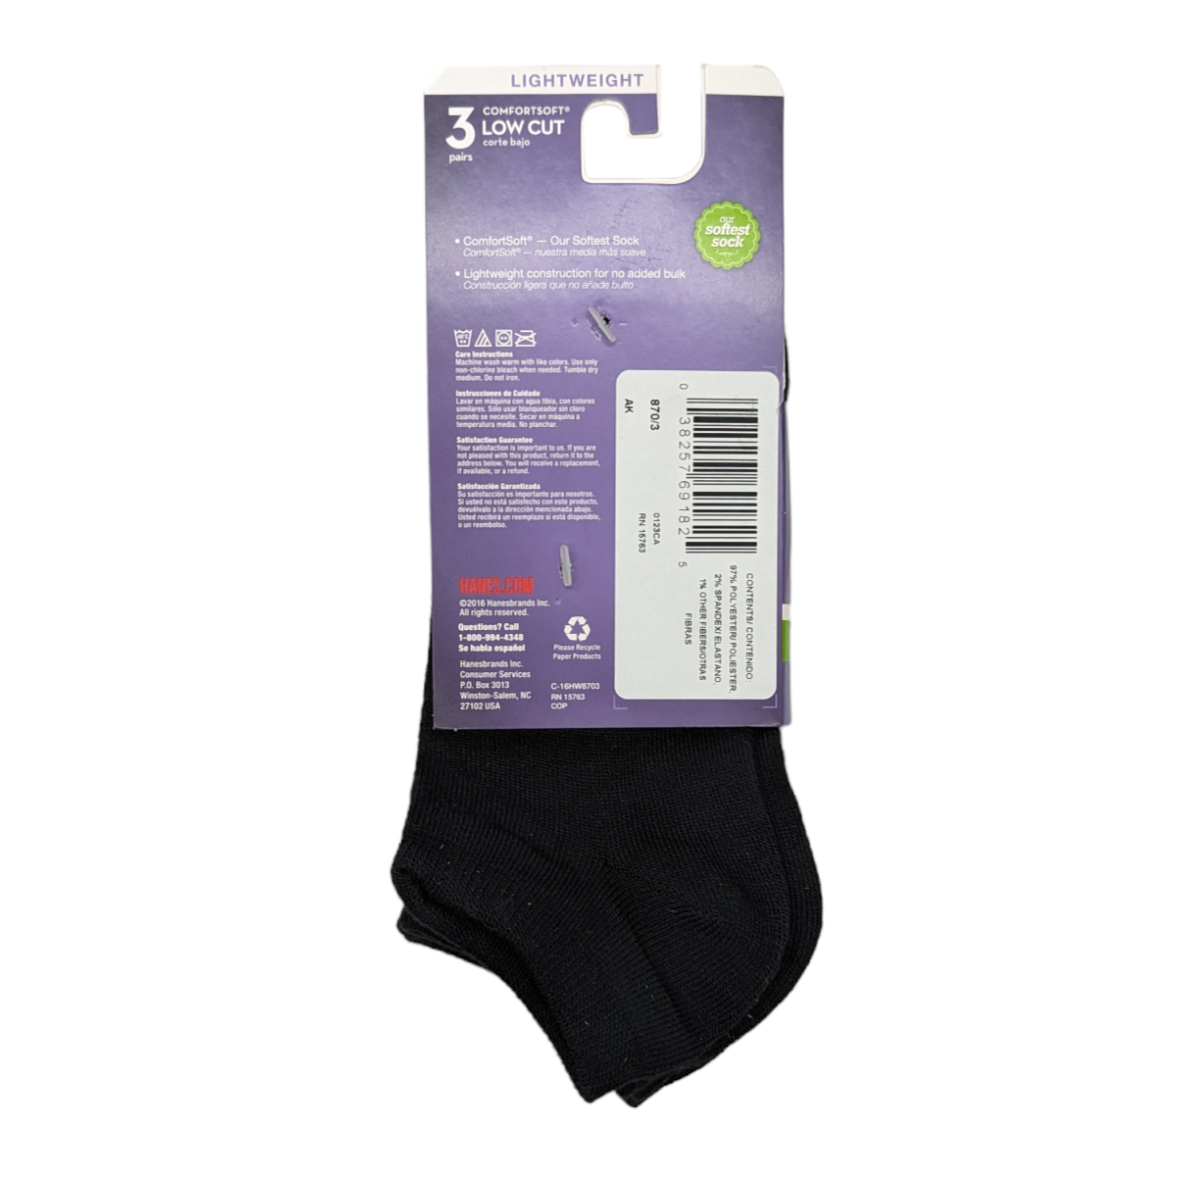 Women's medium low cut socks